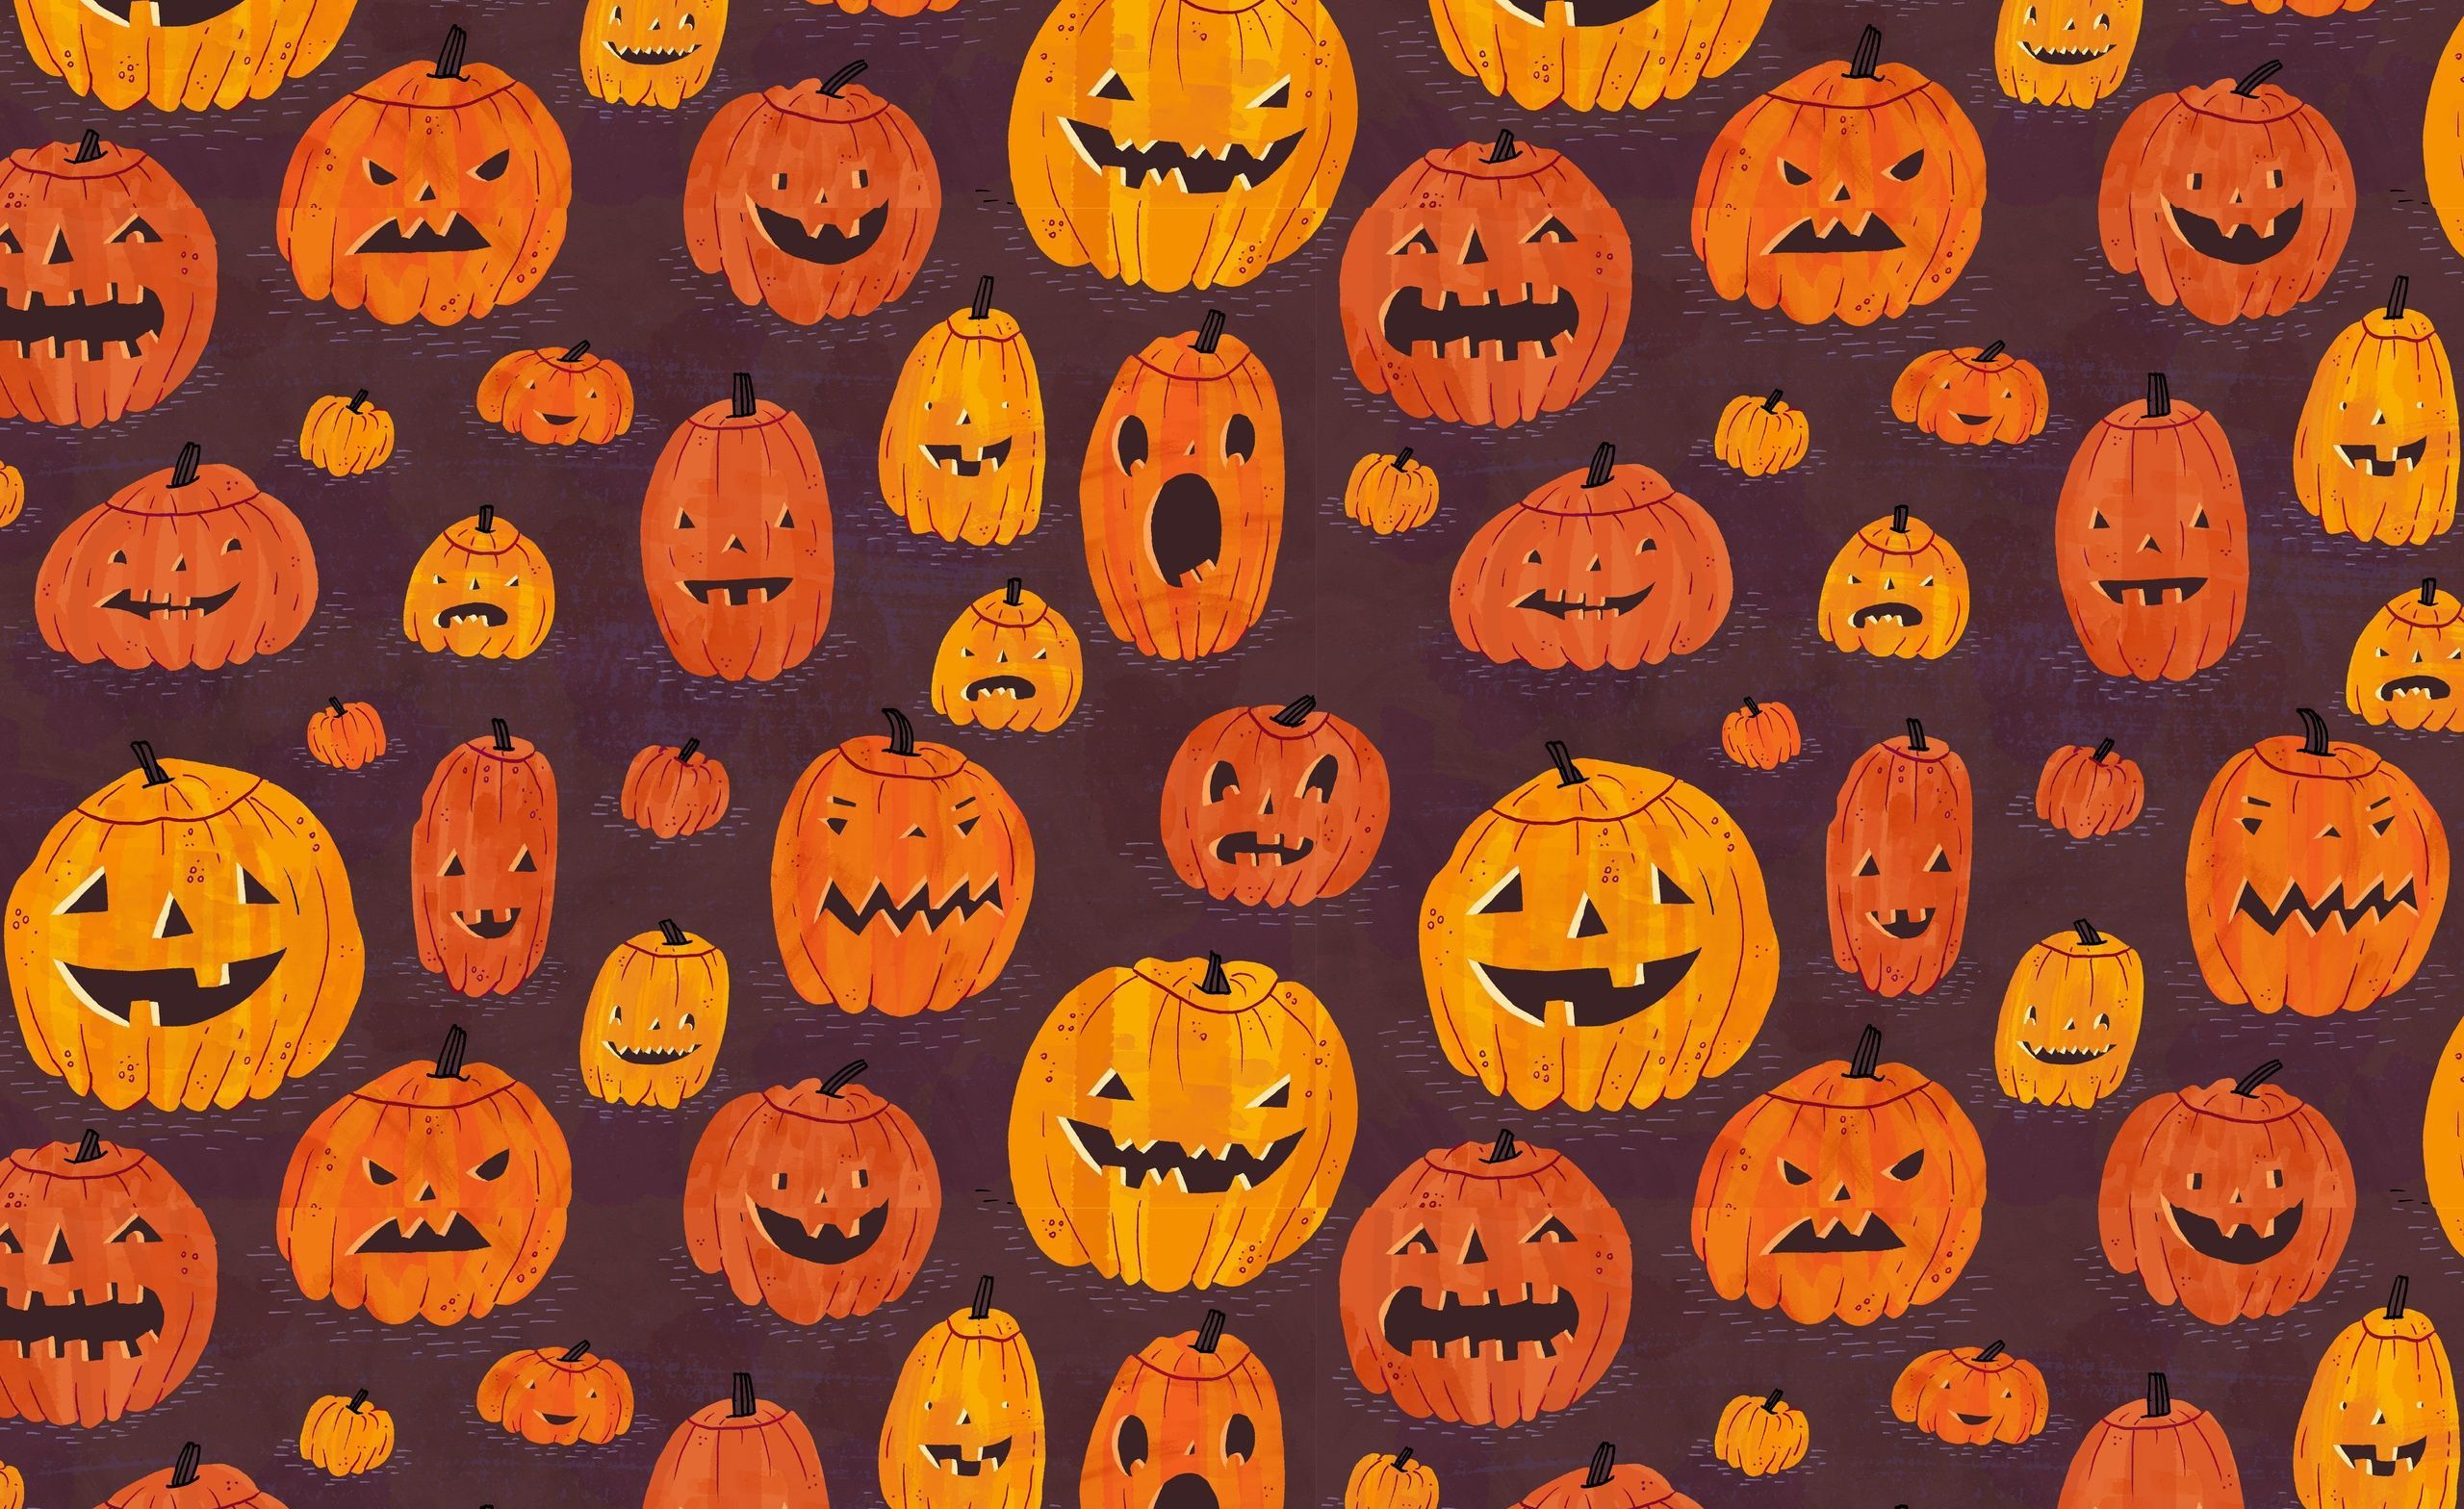 A pattern of pumpkins with faces on them - Halloween, Halloween desktop, cute Halloween, spooky, cute fall, pumpkin